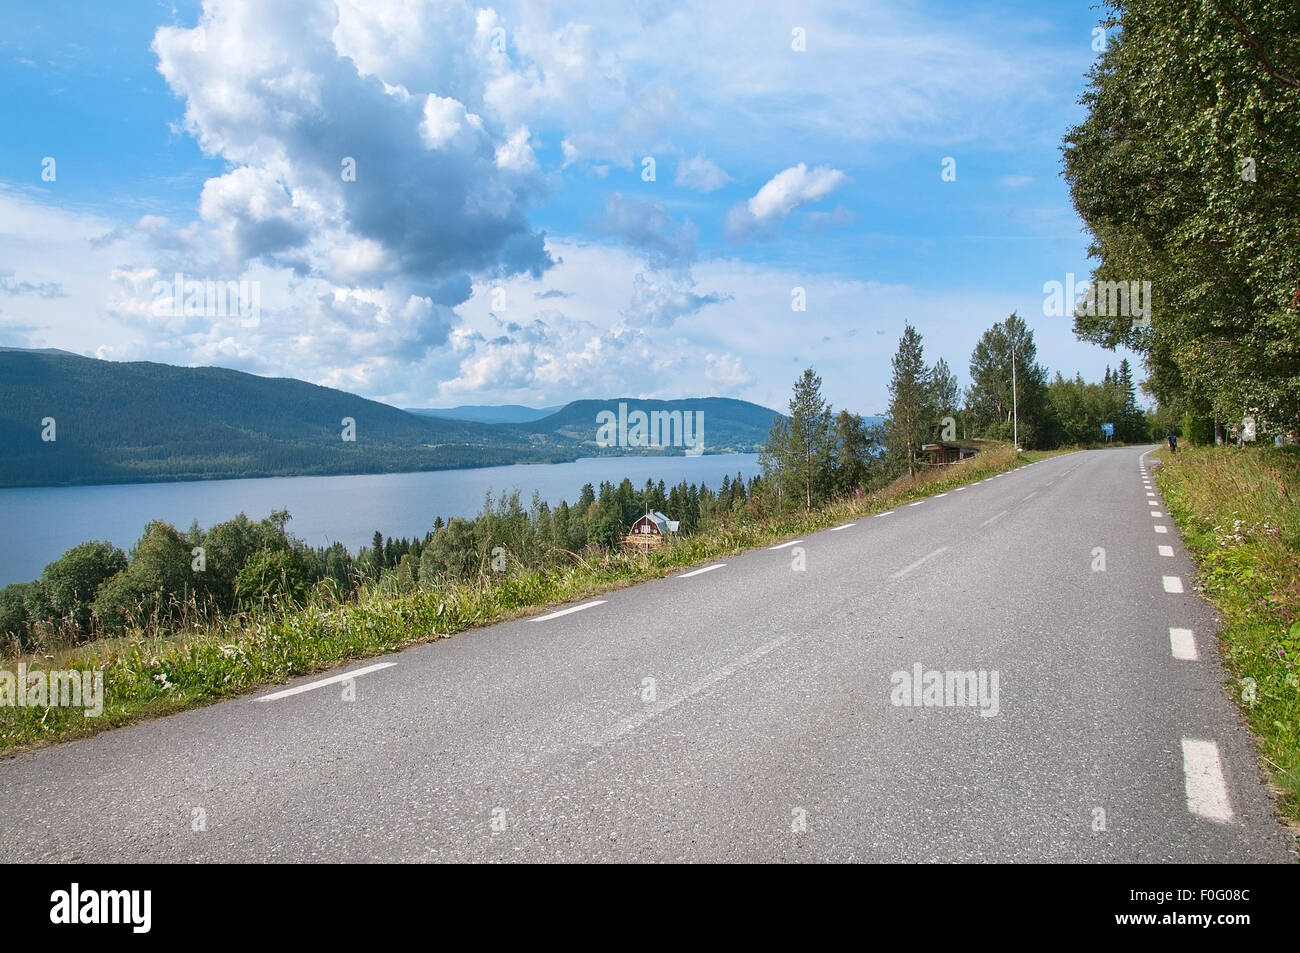 Par la route du lac. Paysage pittoresque près de Ostersund dans le Nord de la Suède sur l'image. Banque D'Images